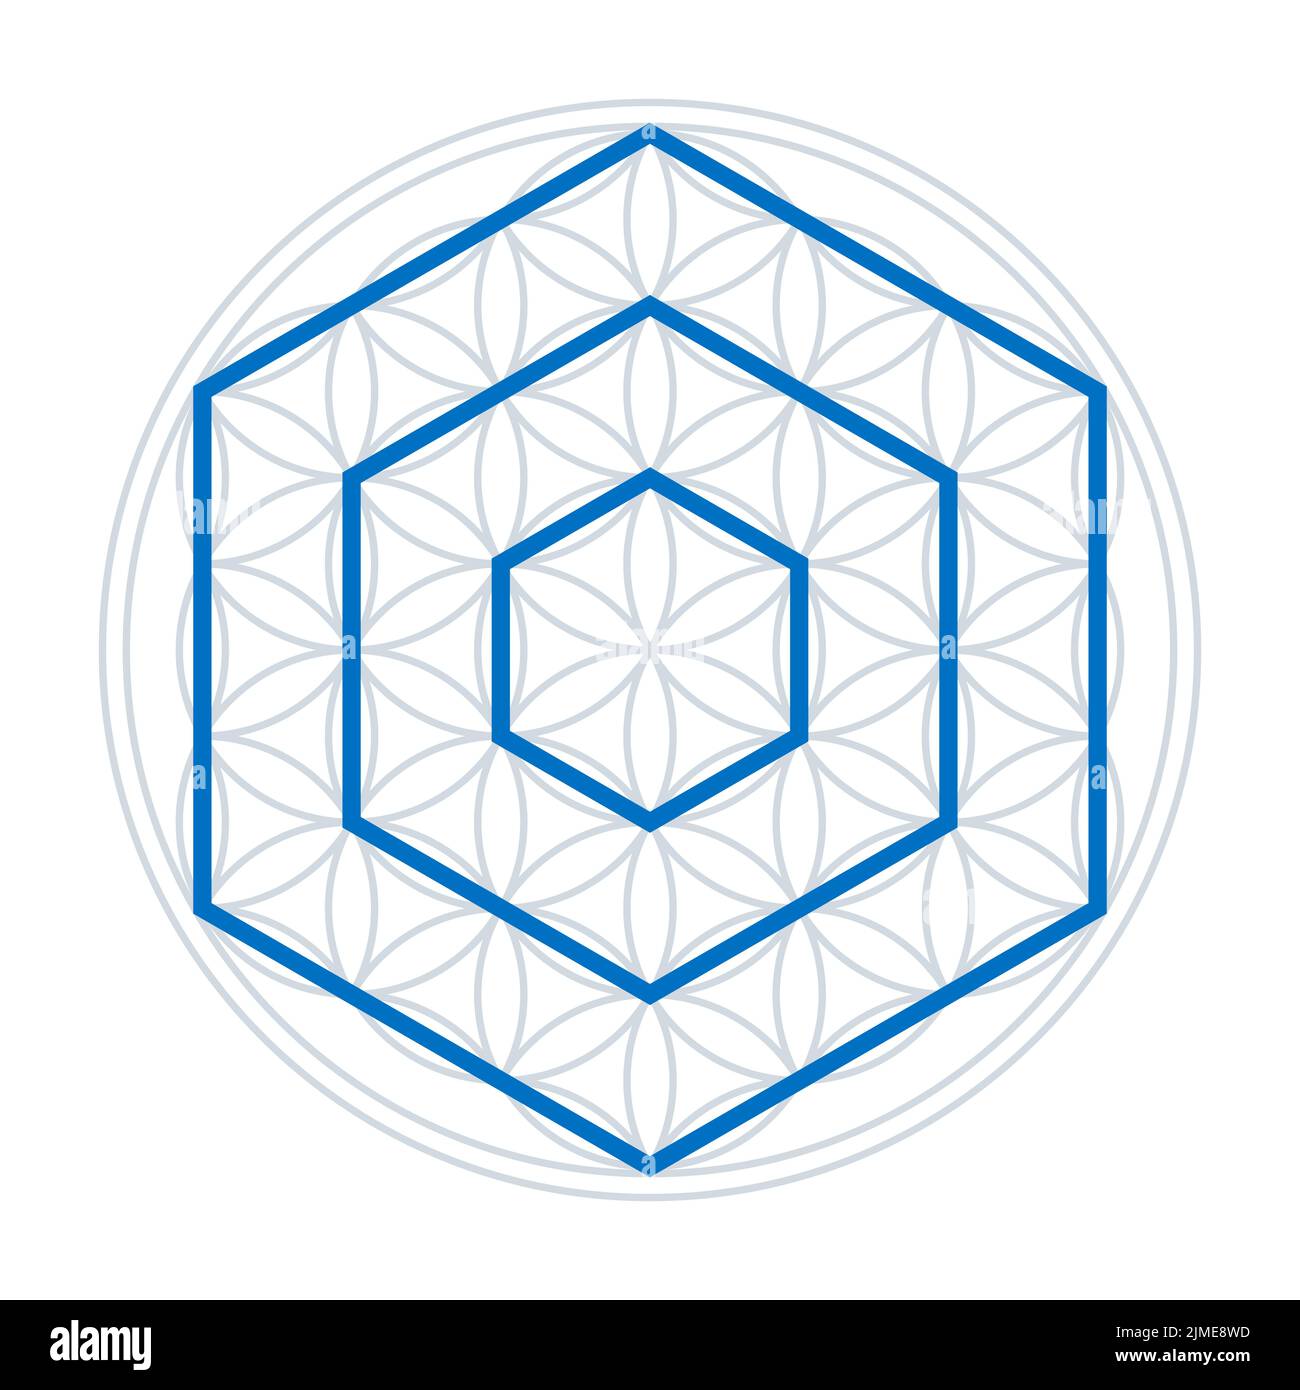 Drei Sechsecke in einer Blume des Lebens. Blaue Polygone mit jeweils sechs Seiten, die Spitzen nach oben, über einer geometrischen Figur, mit überlappenden Kreisen. Stockfoto